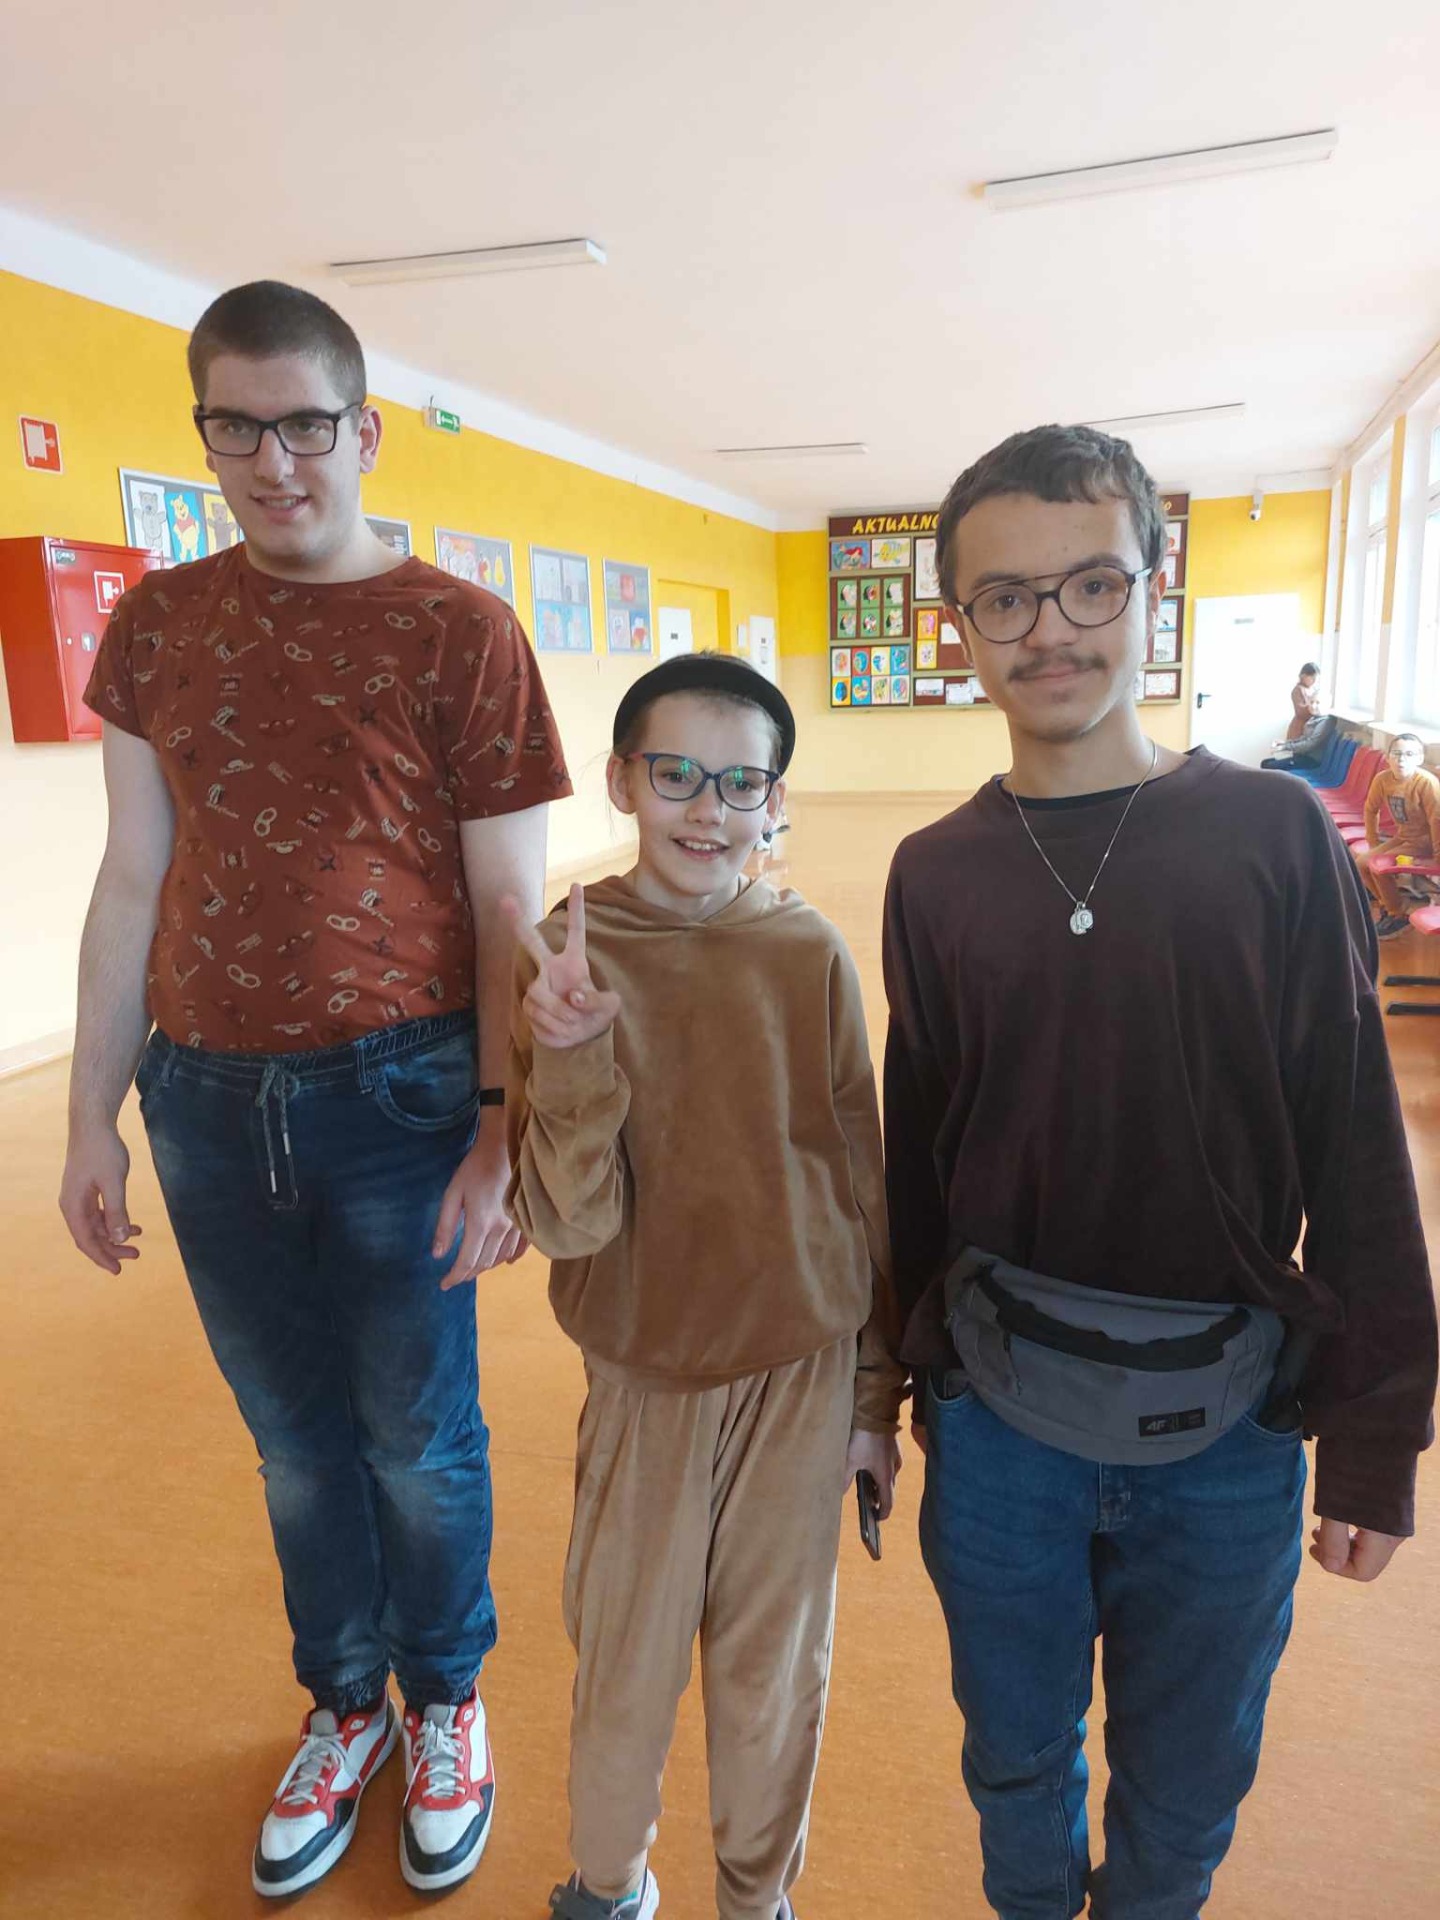 3 uczniów pozuje do zdjecia, mają brązowe ubrania